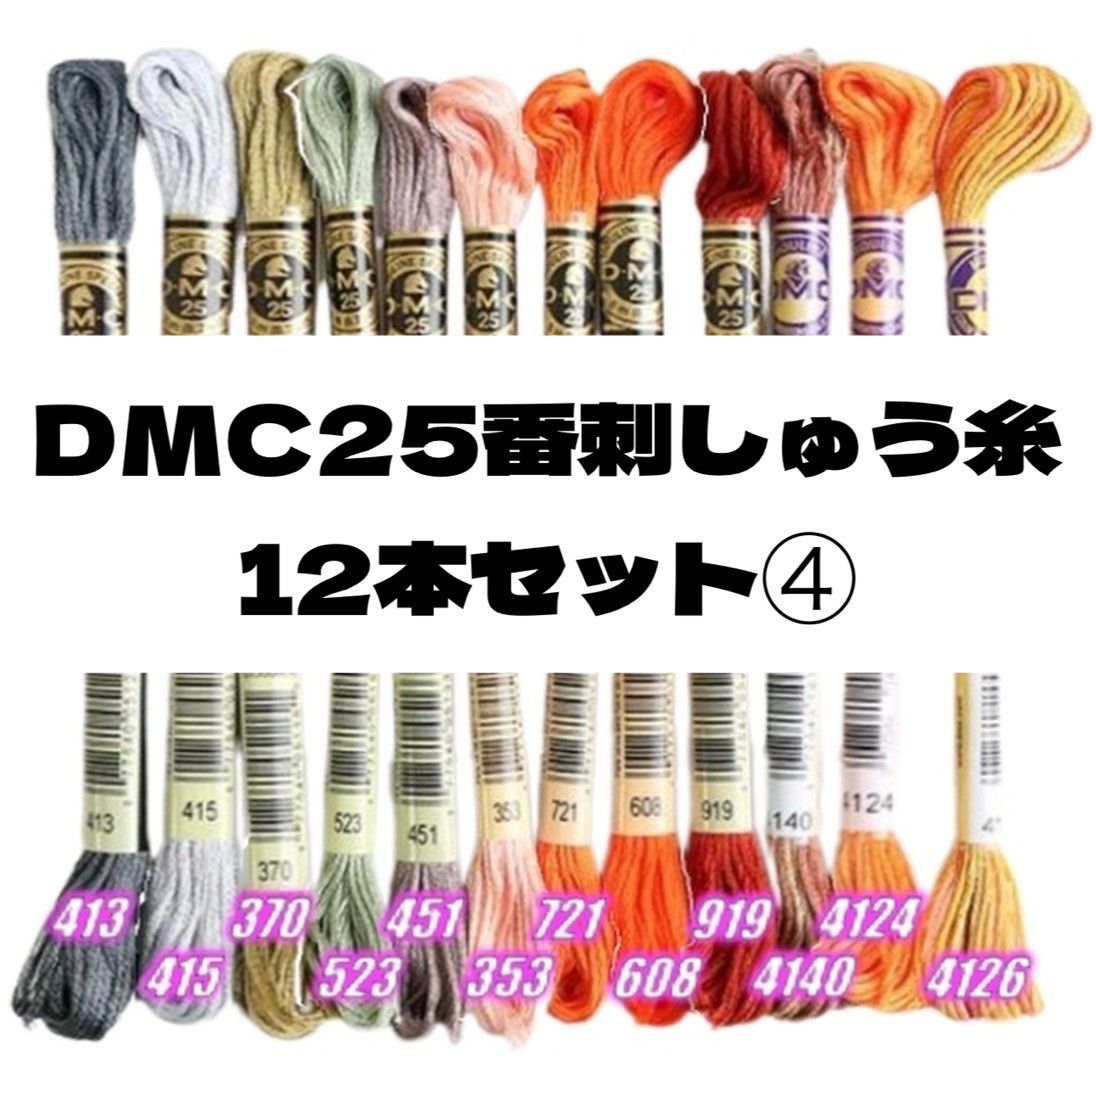 DMC25 刺しゅう糸 #25  12本セット①